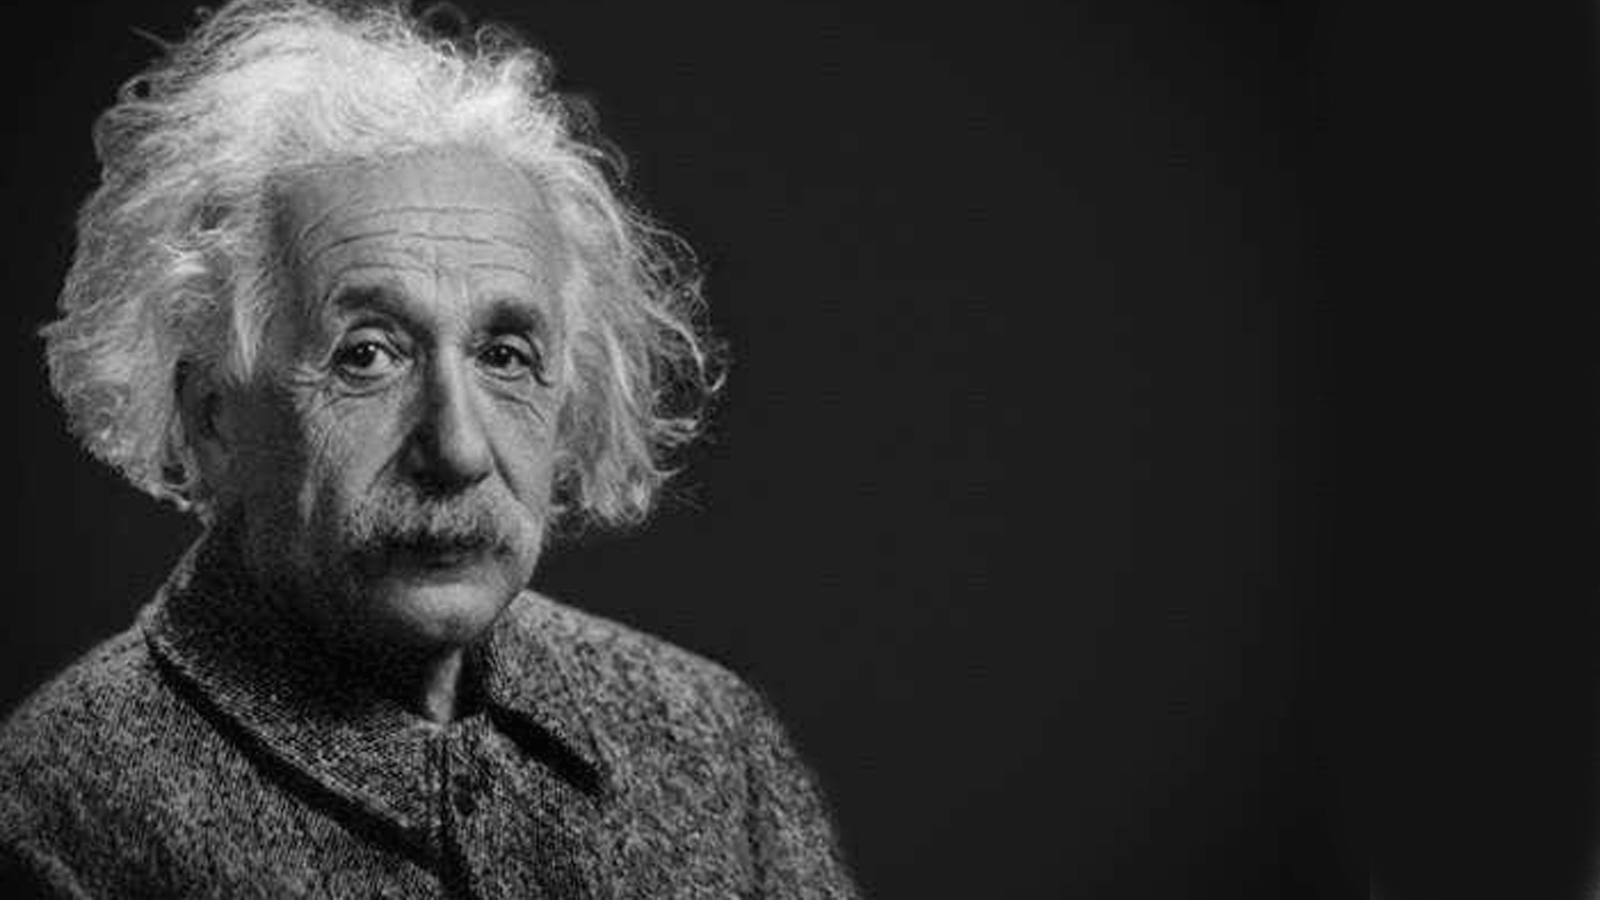 صورة للعالم ألبرت آينشتاين من صفحة موثقة تحمل اسمه على تويتر